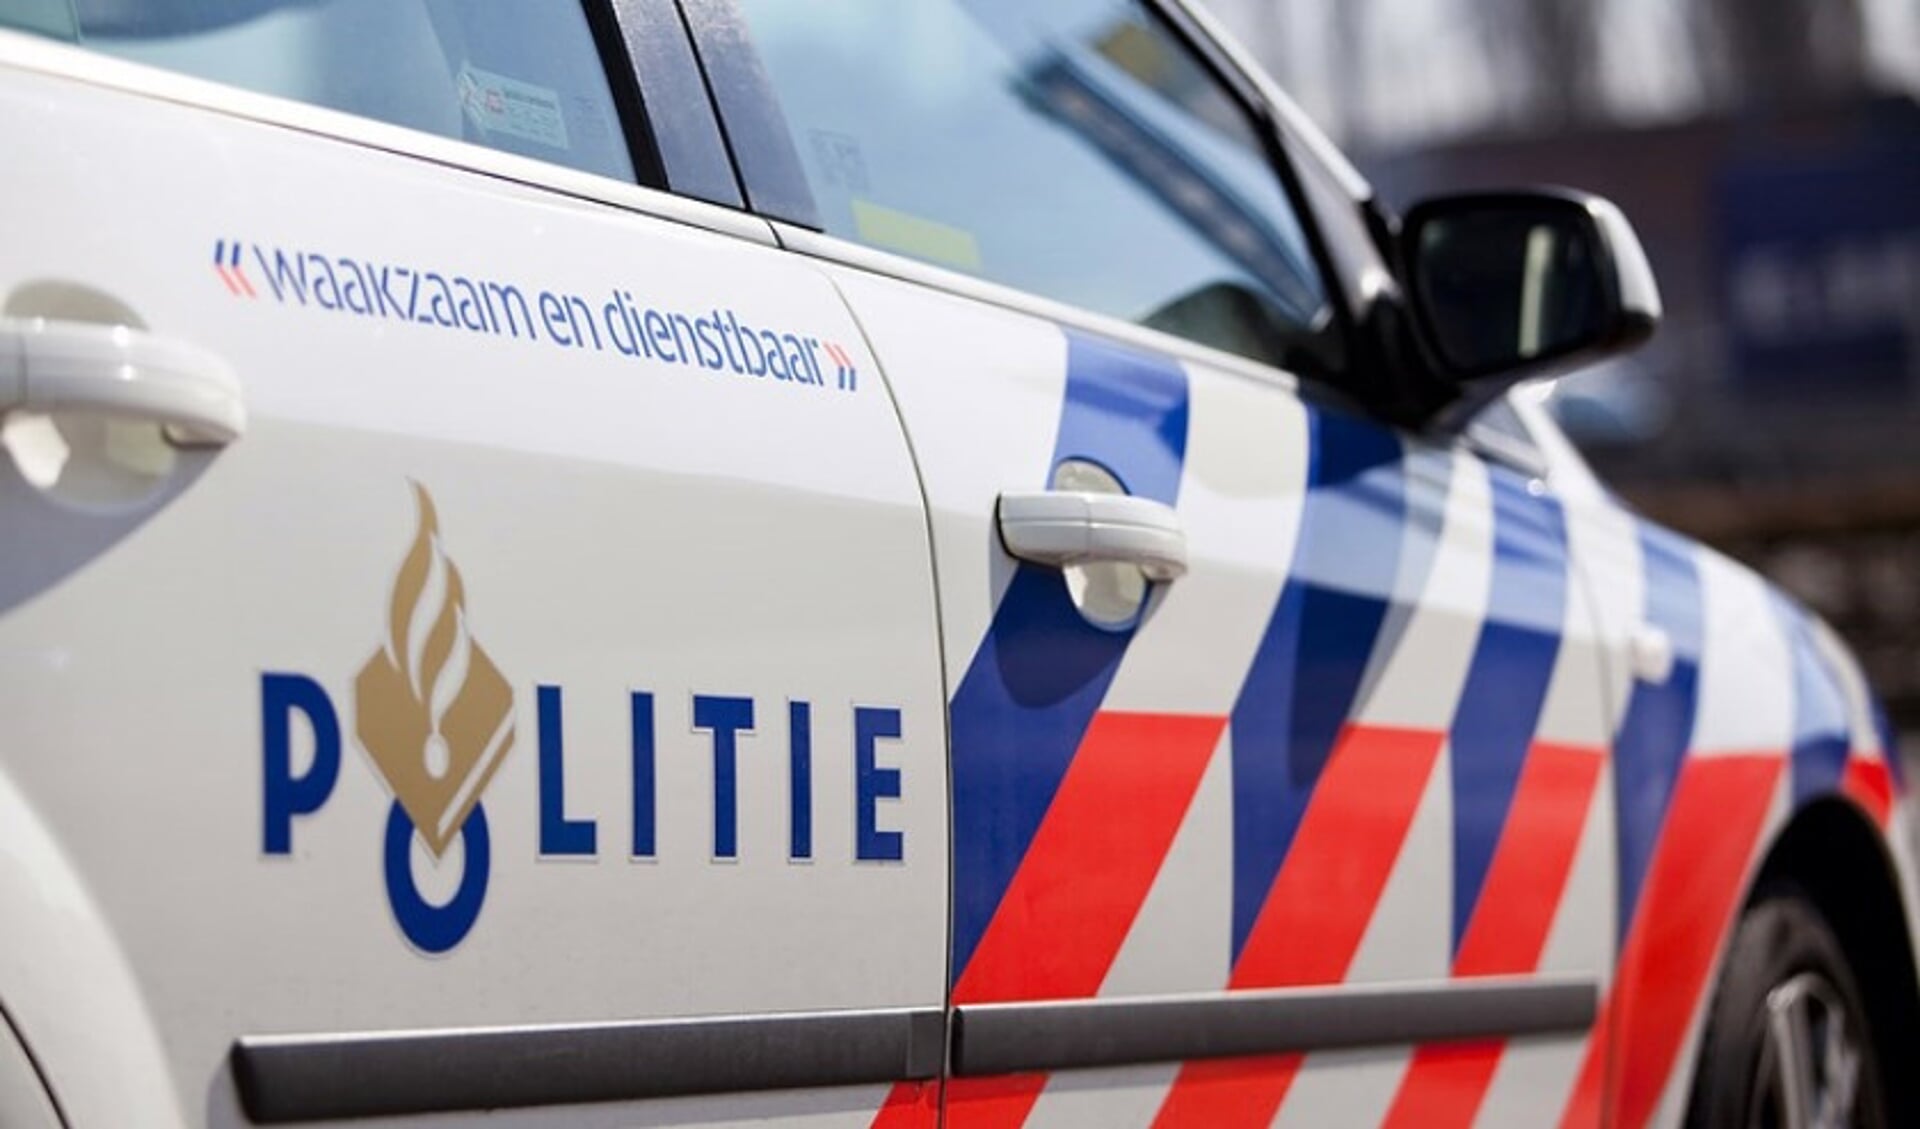 De politie Boxmeer is deze middag druk in de weer geweest met diverse ongevallen in korte tijd op de A73 bij Boxmeer.